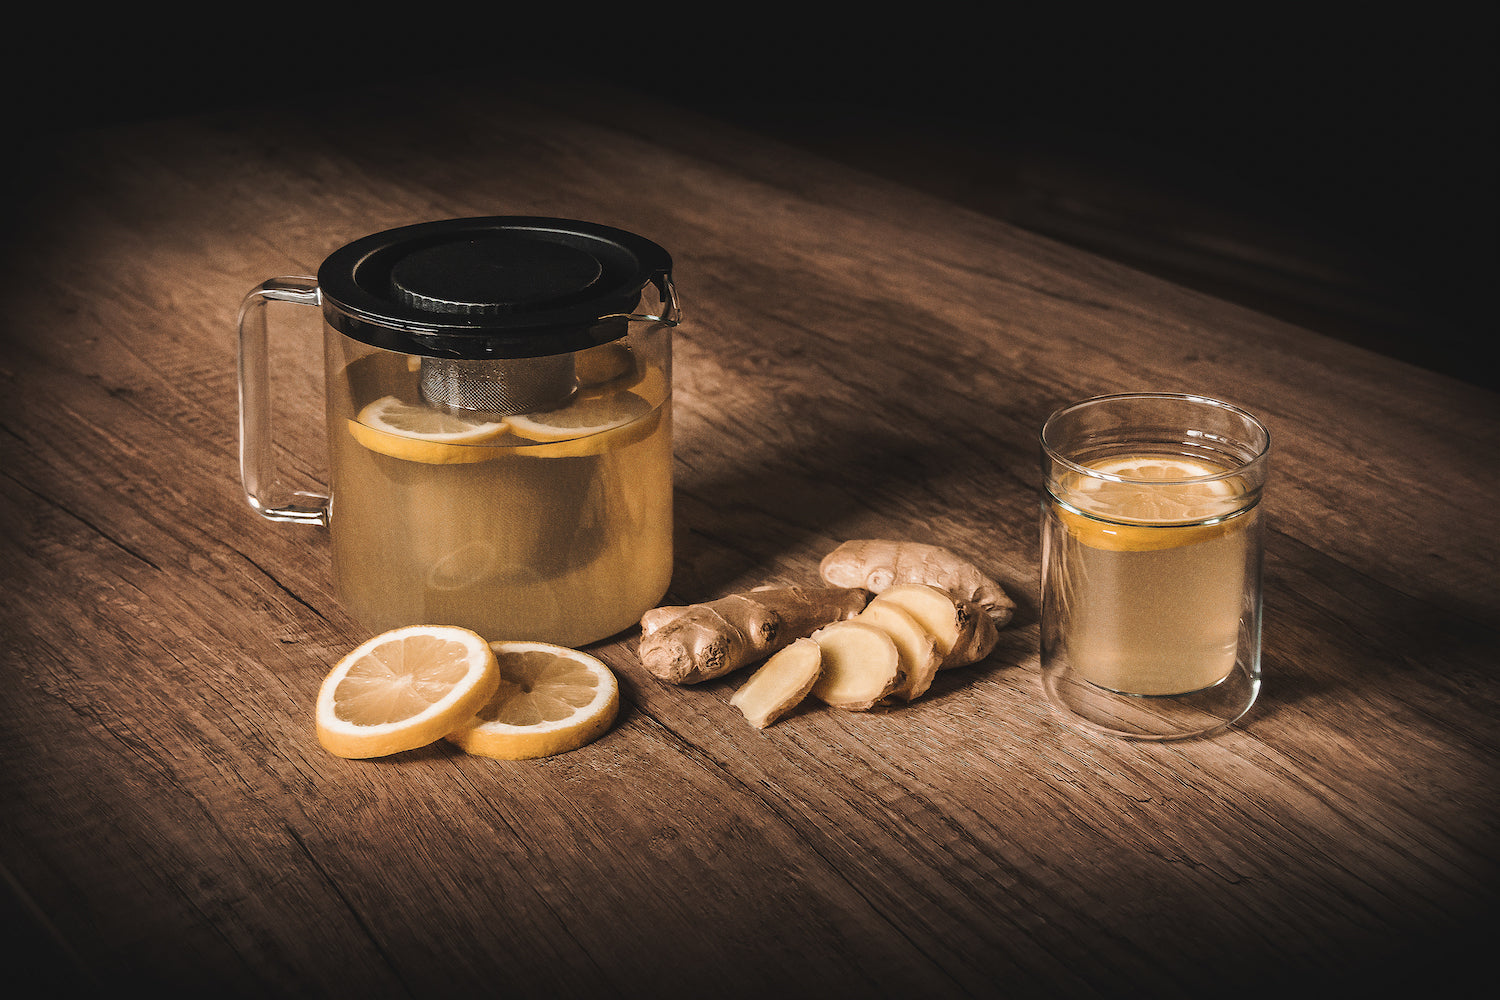 Skleněná konvice na čaj Simax From s citronovým čajem a zázvorem se sklenkou Twin